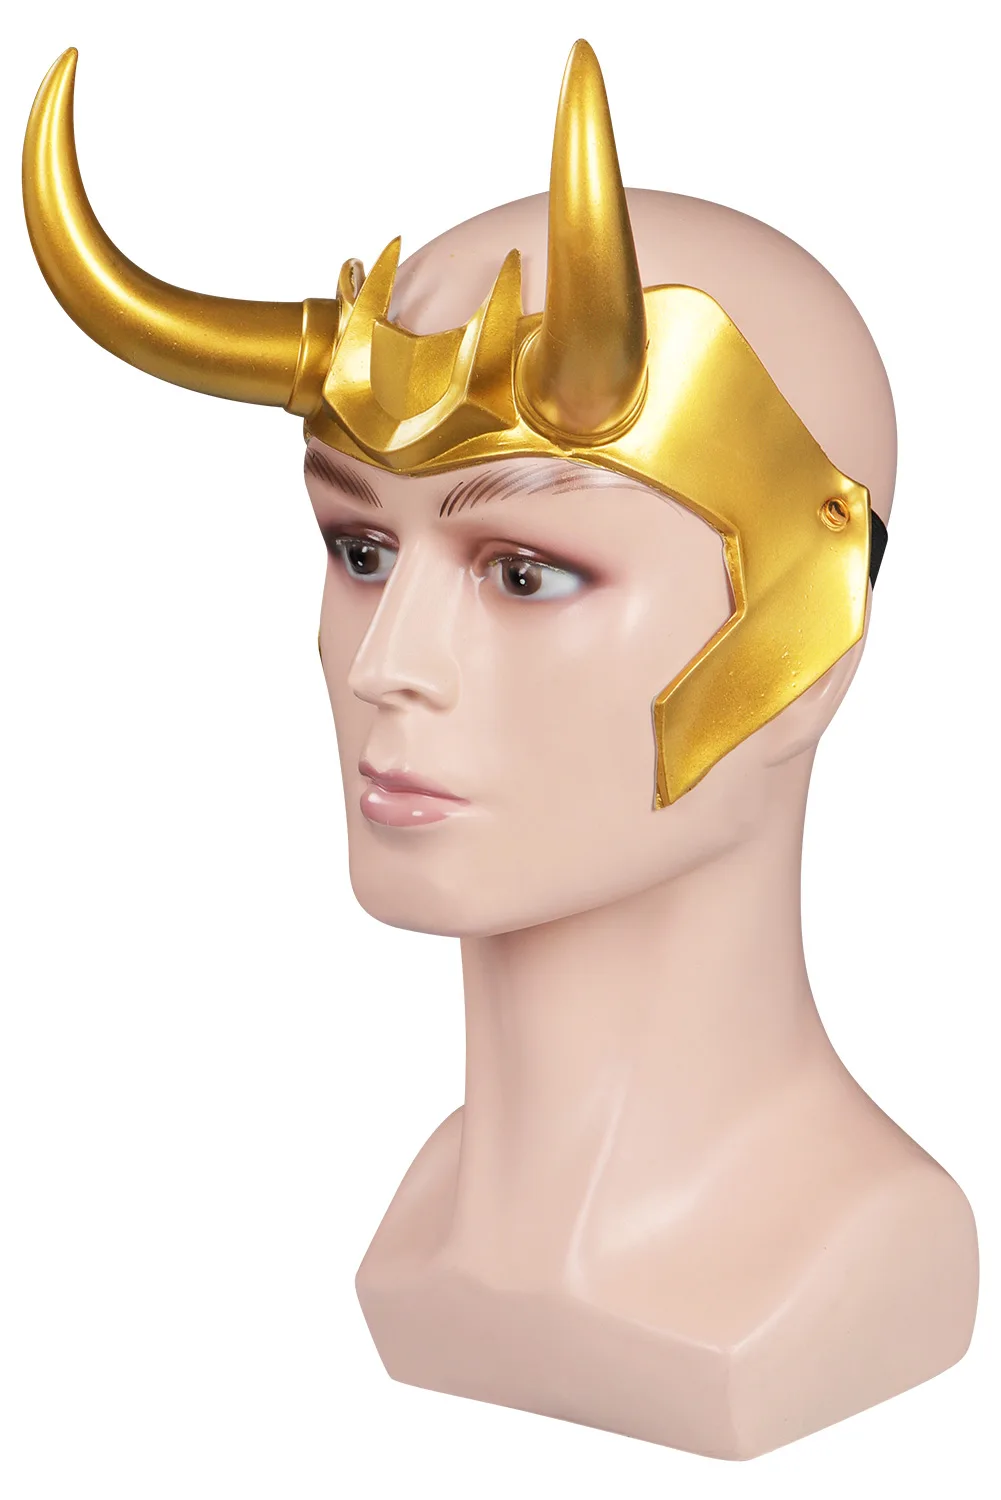 

Головной убор Loki, маска Loki, аксессуары для косплея, латексный шлем для Хэллоуина, маскарада, искусственная кожа, реквизит для ролевых игр